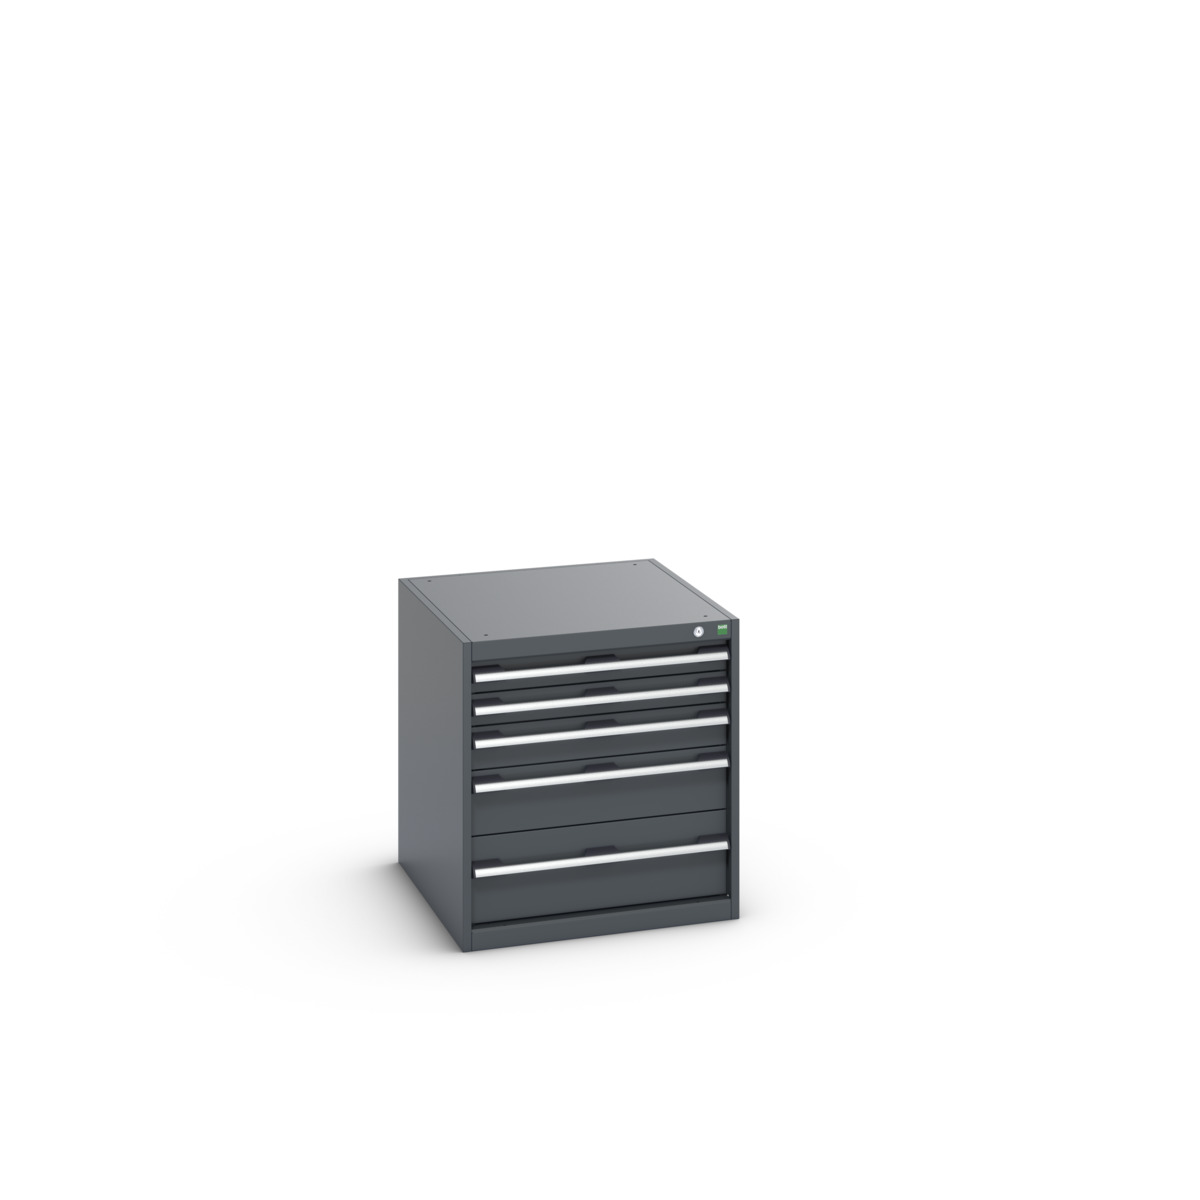 40027007.77V - cubio drawer cabinet